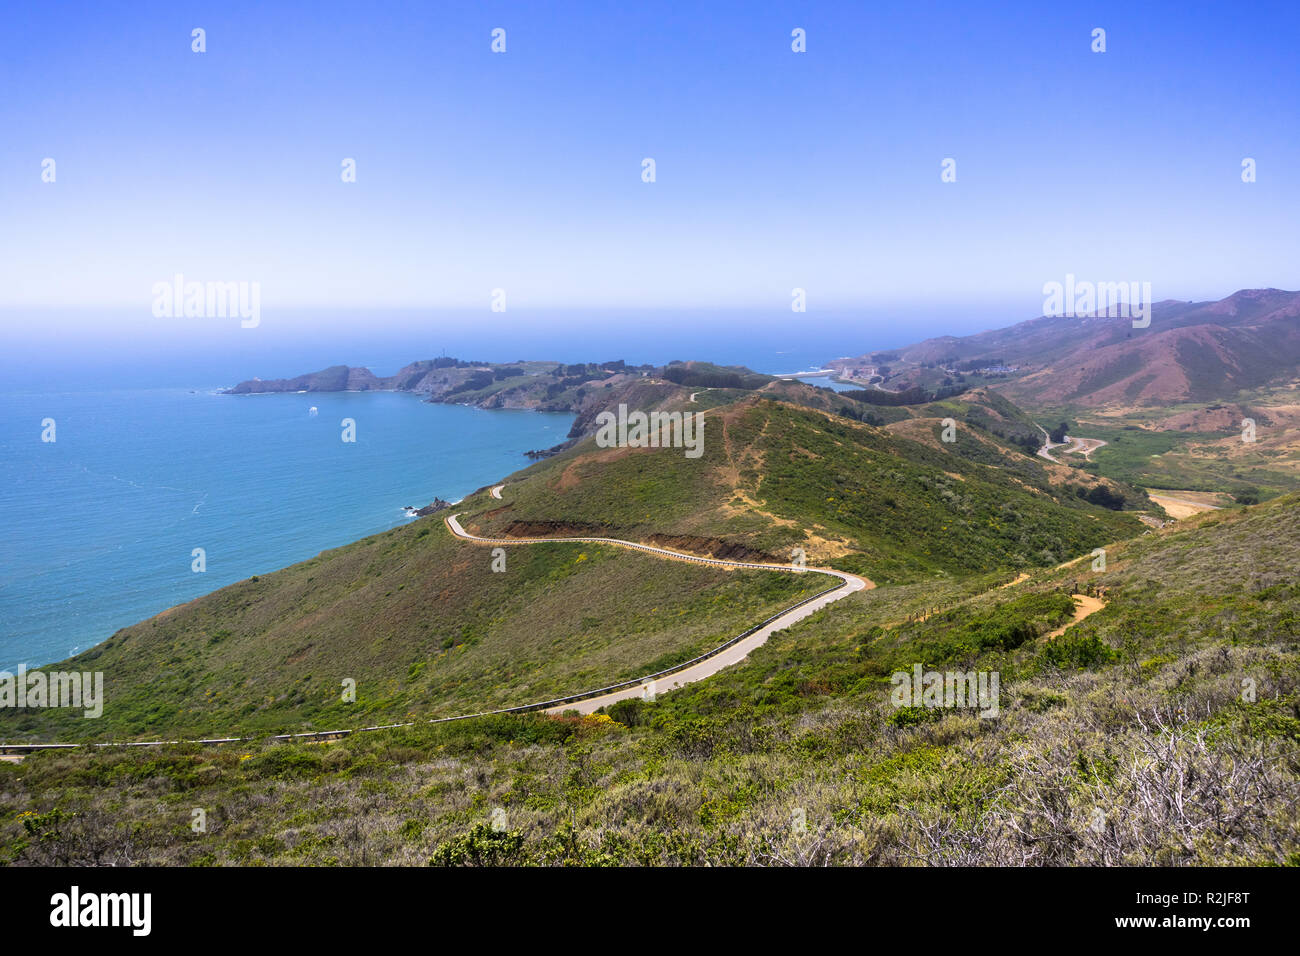 Vue magnifique sur les vertes collines de Marin Headlands traversé par une route sinueuse ; le littoral de l'océan Pacifique à l'arrière-plan ; San Francisco bay Banque D'Images